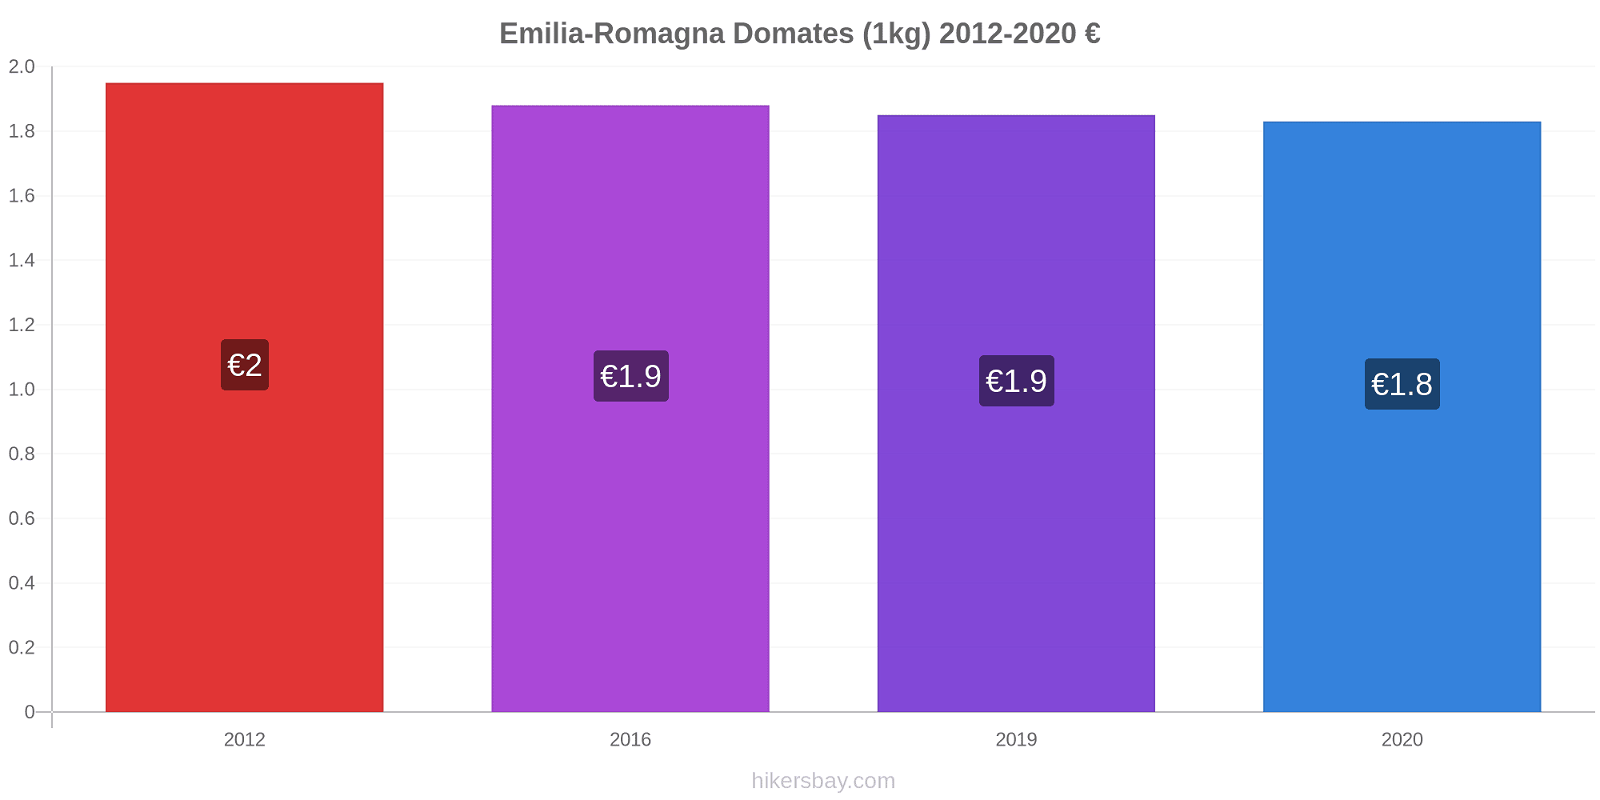 Emilia-Romagna fiyat değişiklikleri Domates (1kg) hikersbay.com